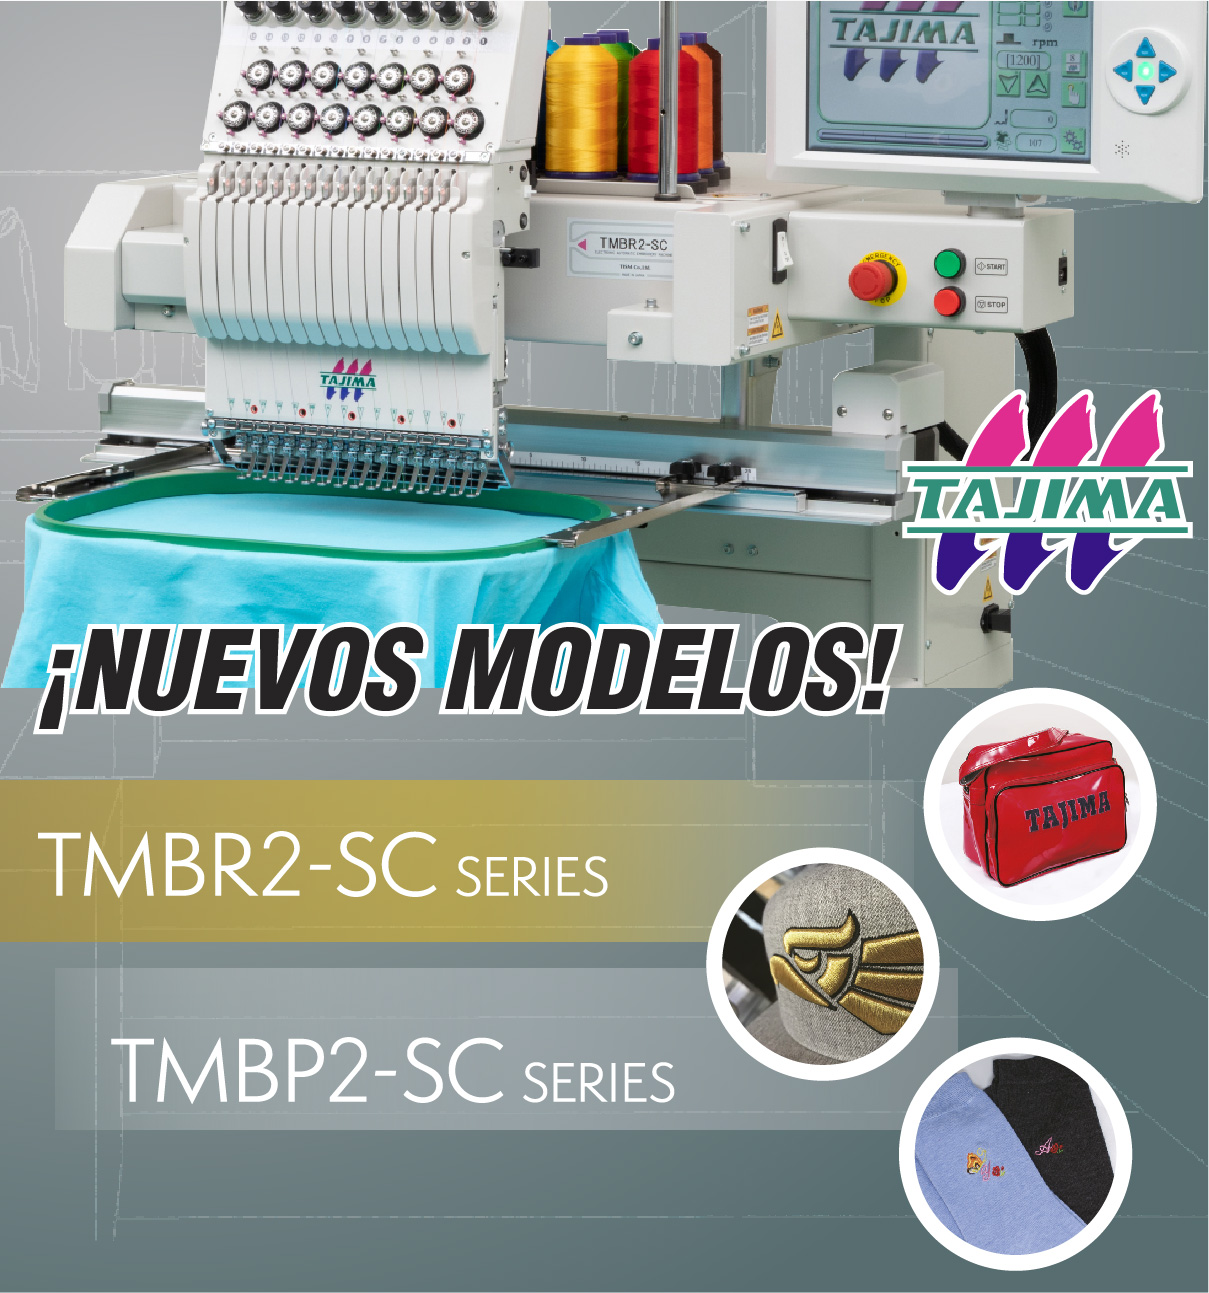 Nuevos modelos TMBP2 y TMBR2 SC Series Tajima